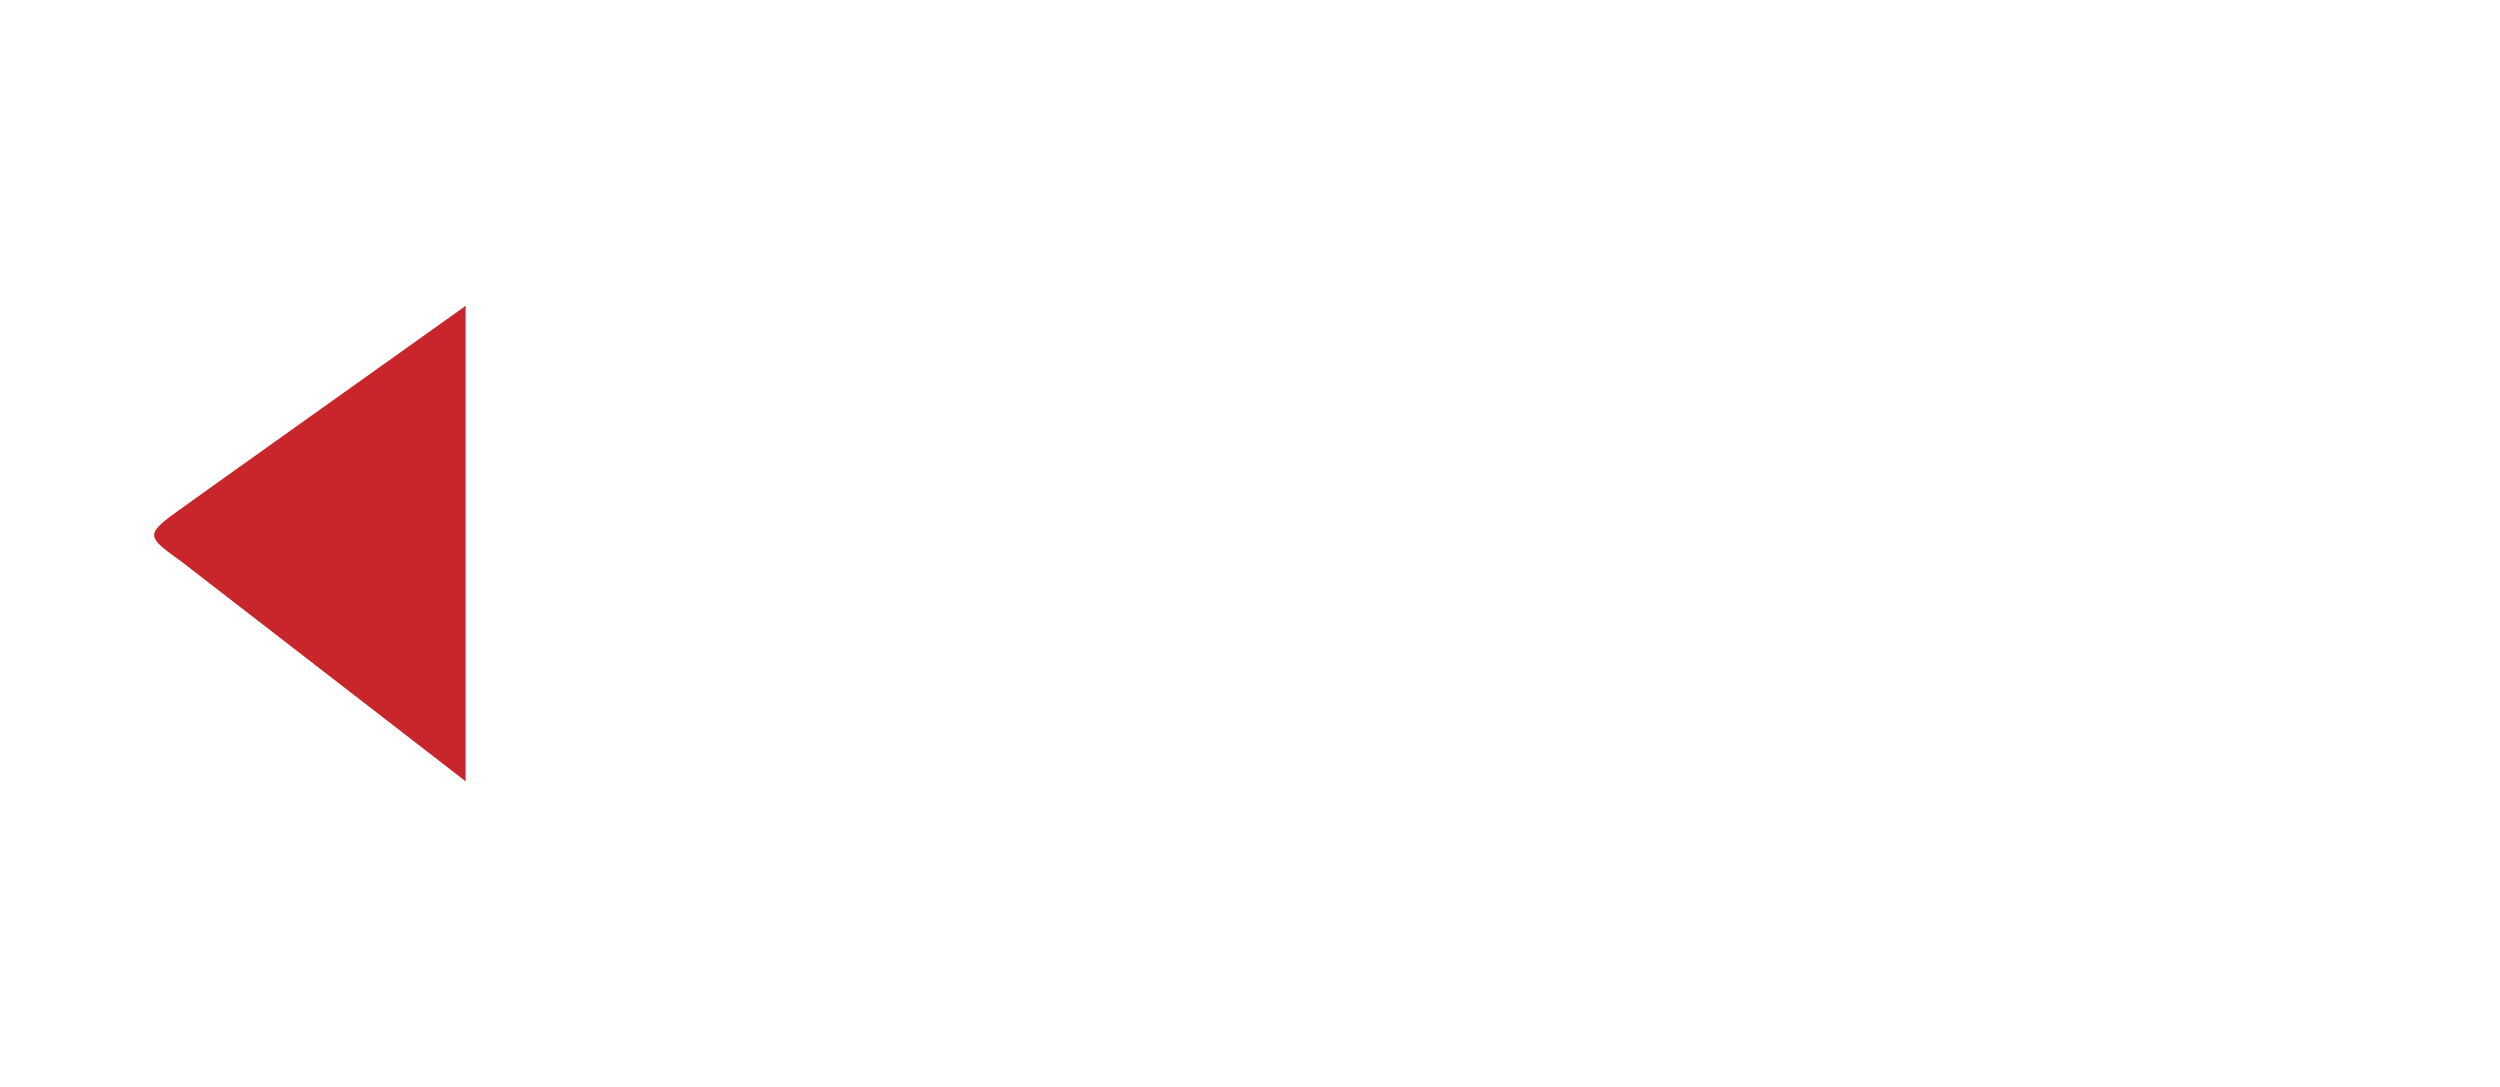 TubeKou